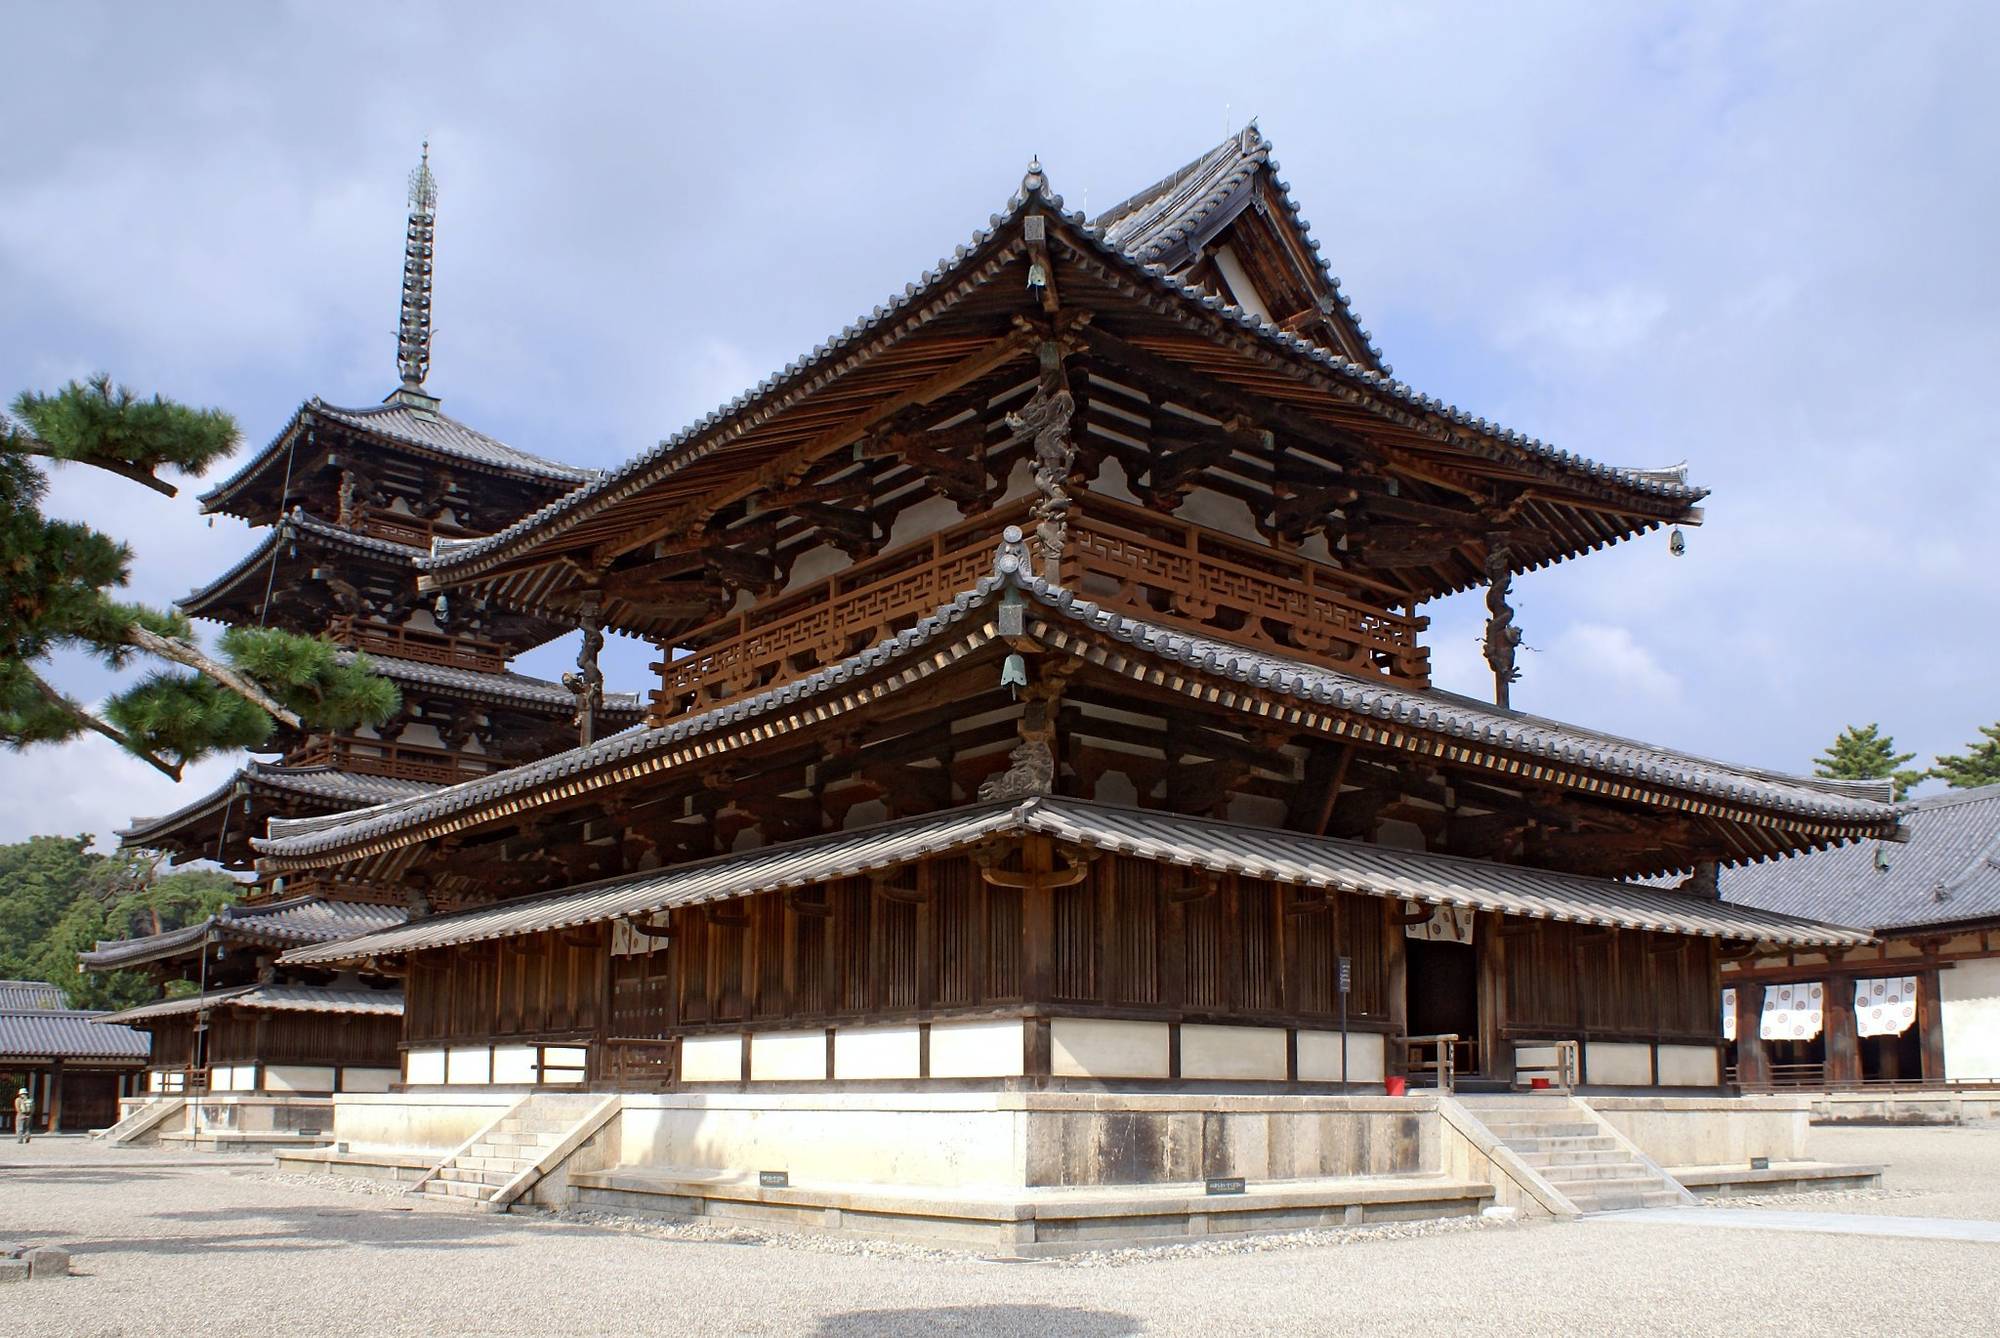 О монастырь Хорюдзи и других памятниках деревянного зодчества Японии расскажет Лев Масиель. <br/>
